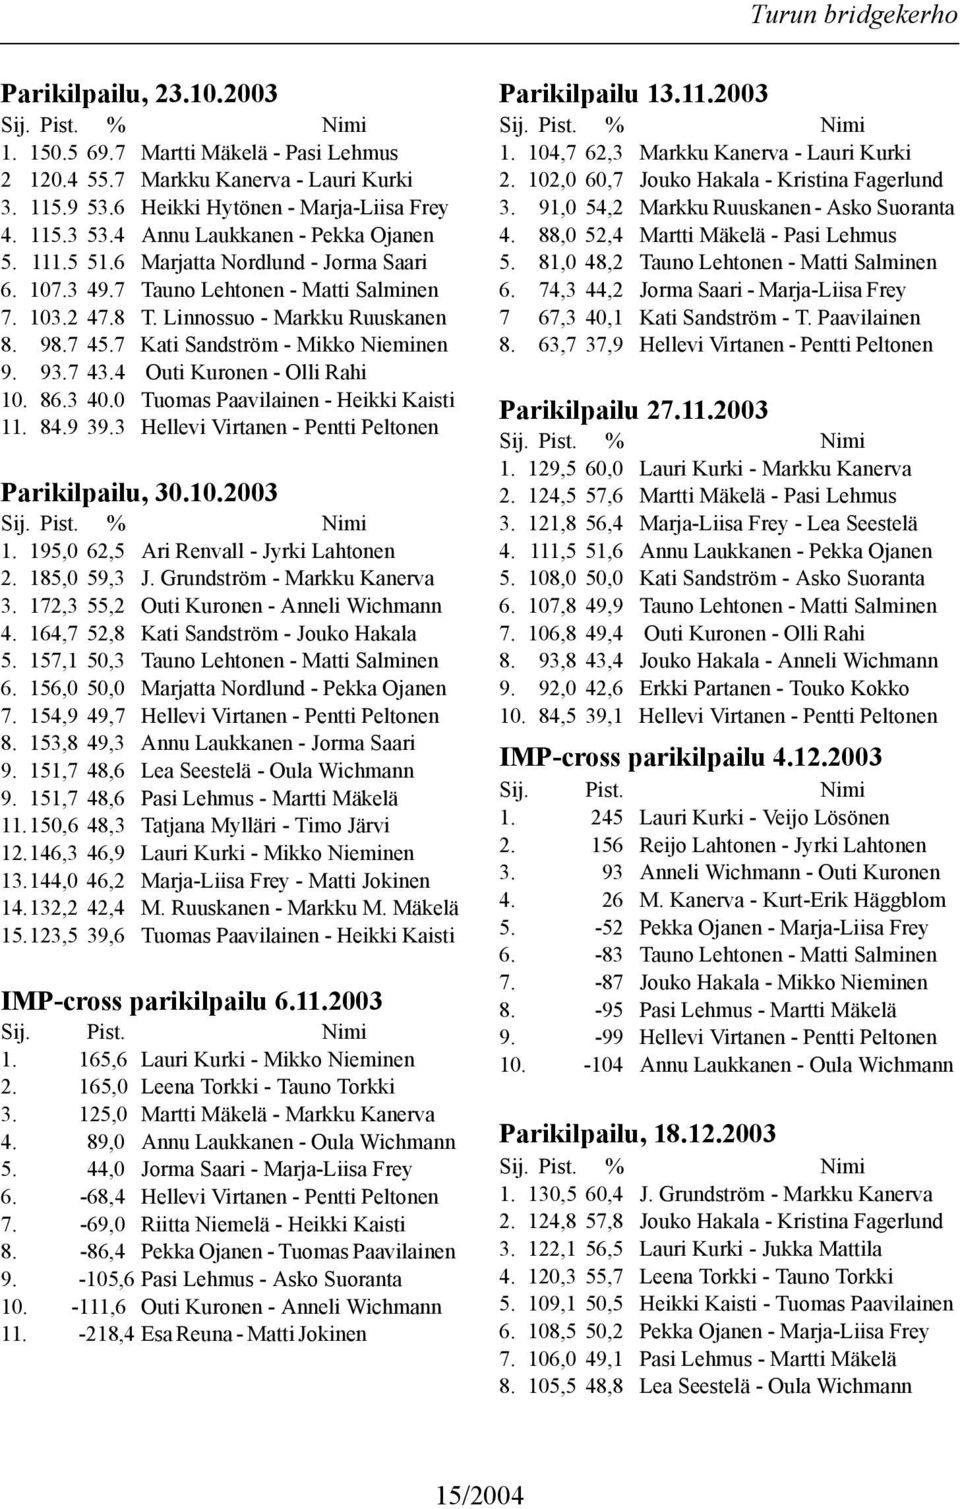 7 Kati Sandström - Mikko Nieminen 9. 93.7 43.4 Outi Kuronen - Olli Rahi 10. 86.3 40.0 Tuomas Paavilainen - Heikki Kaisti 11. 84.9 39.3 Hellevi Virtanen - Pentti Peltonen Parikilpailu, 30.10.2003 1.